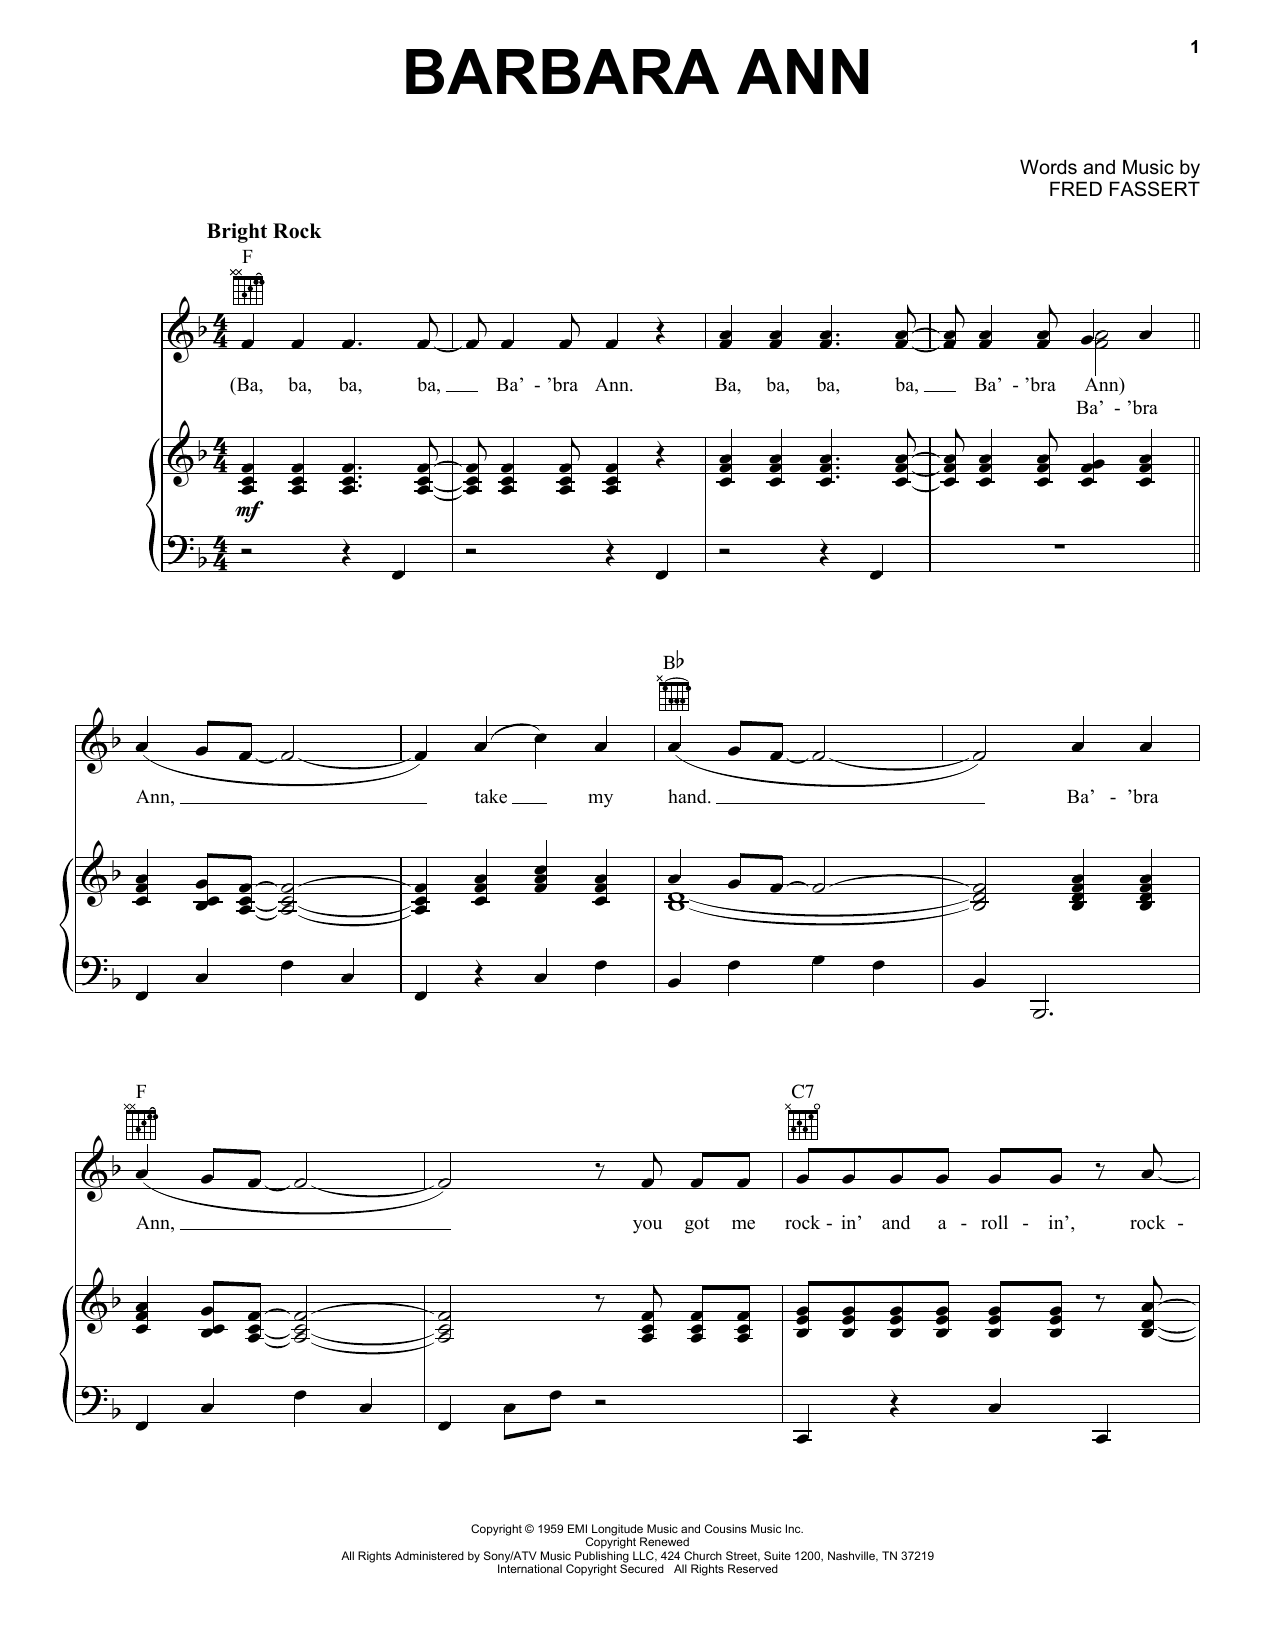 The Beach Boys Barbara Ann sheet music notes and chords arranged for ChordBuddy